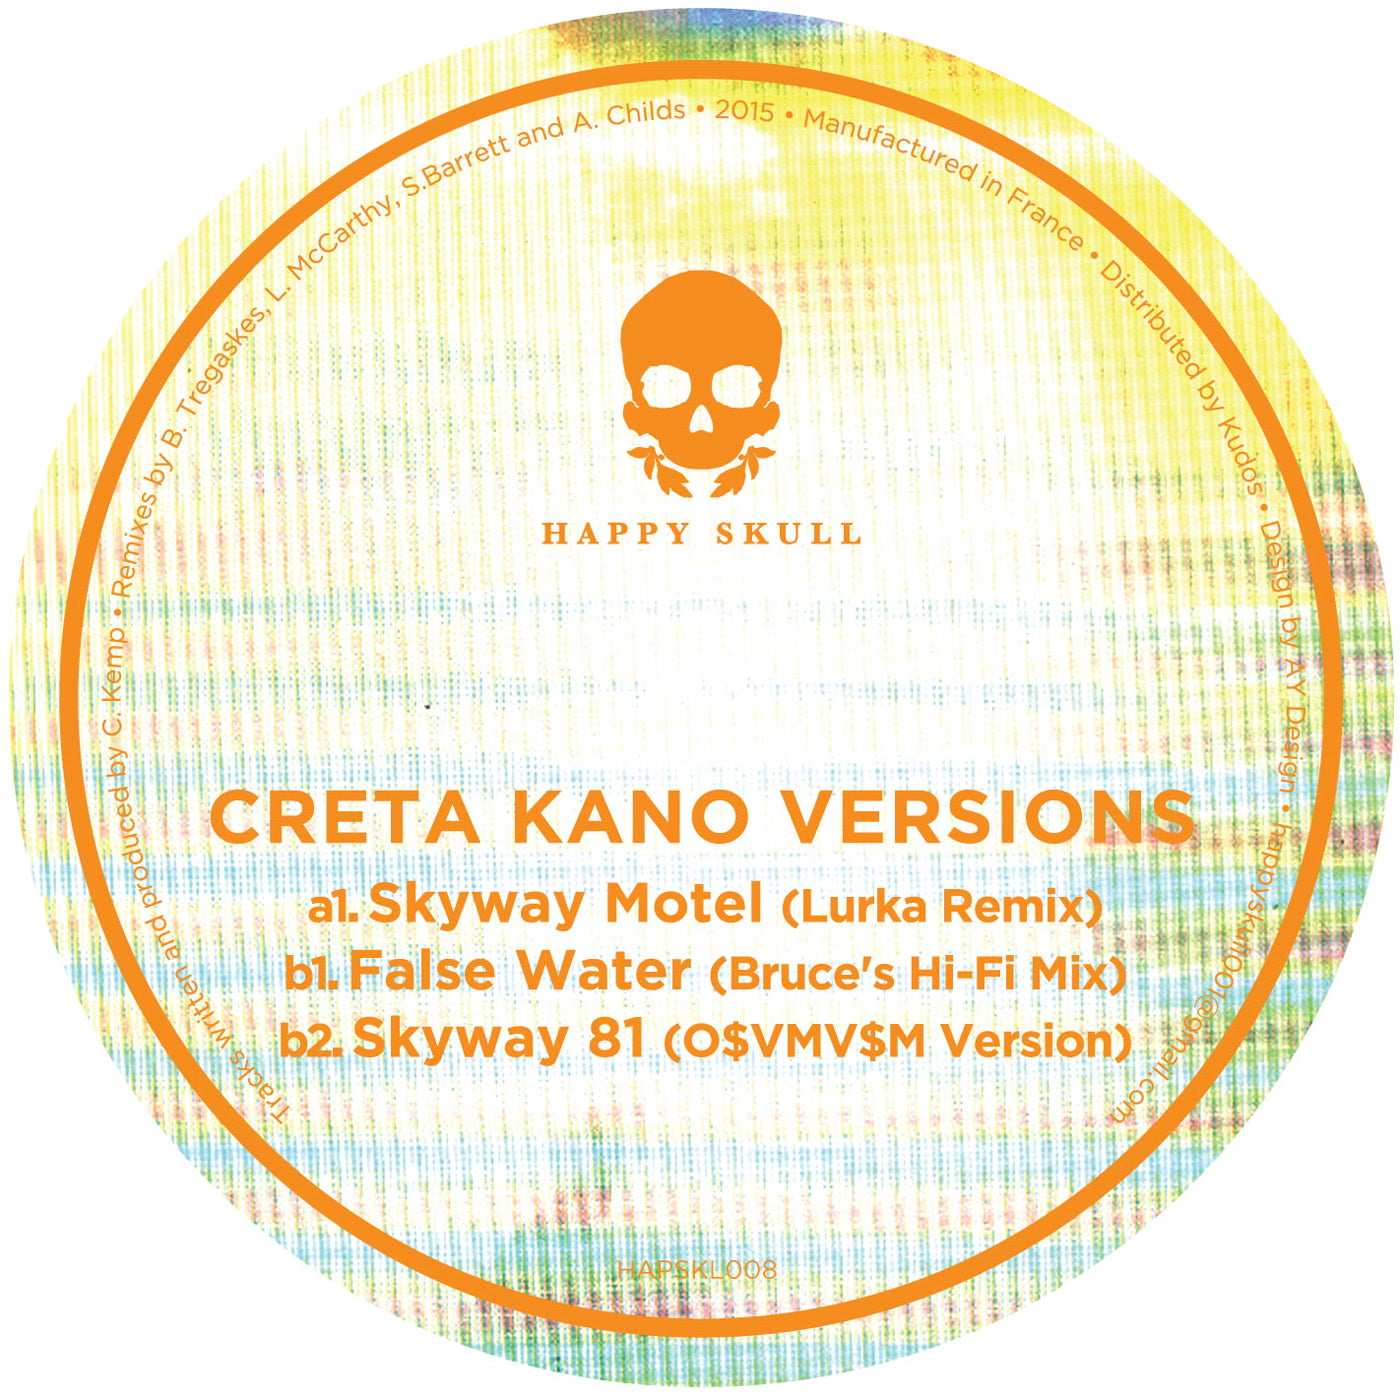 Versions - Creta Kano